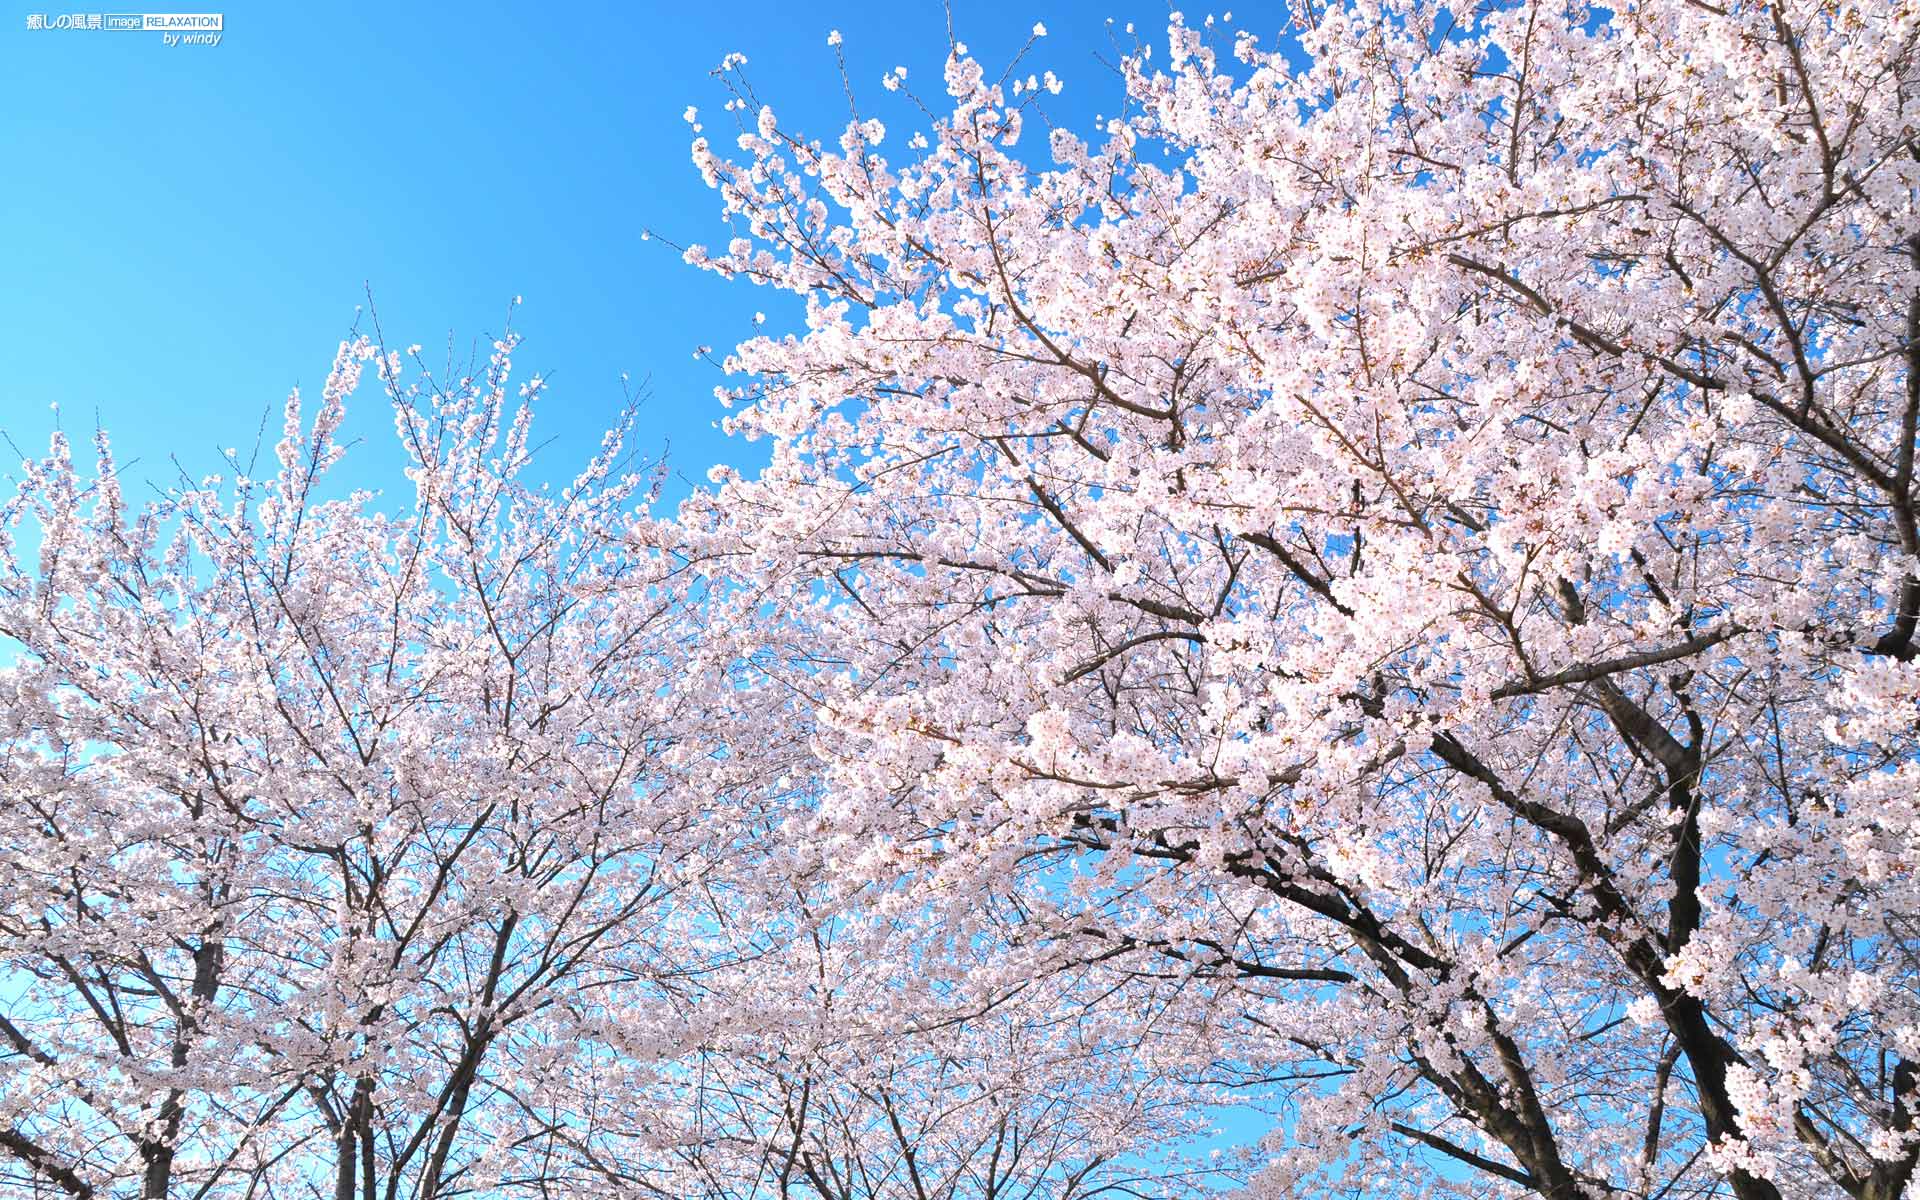 青空に映える満開の桜 癒しの風景 Image Relaxation 癒し壁紙